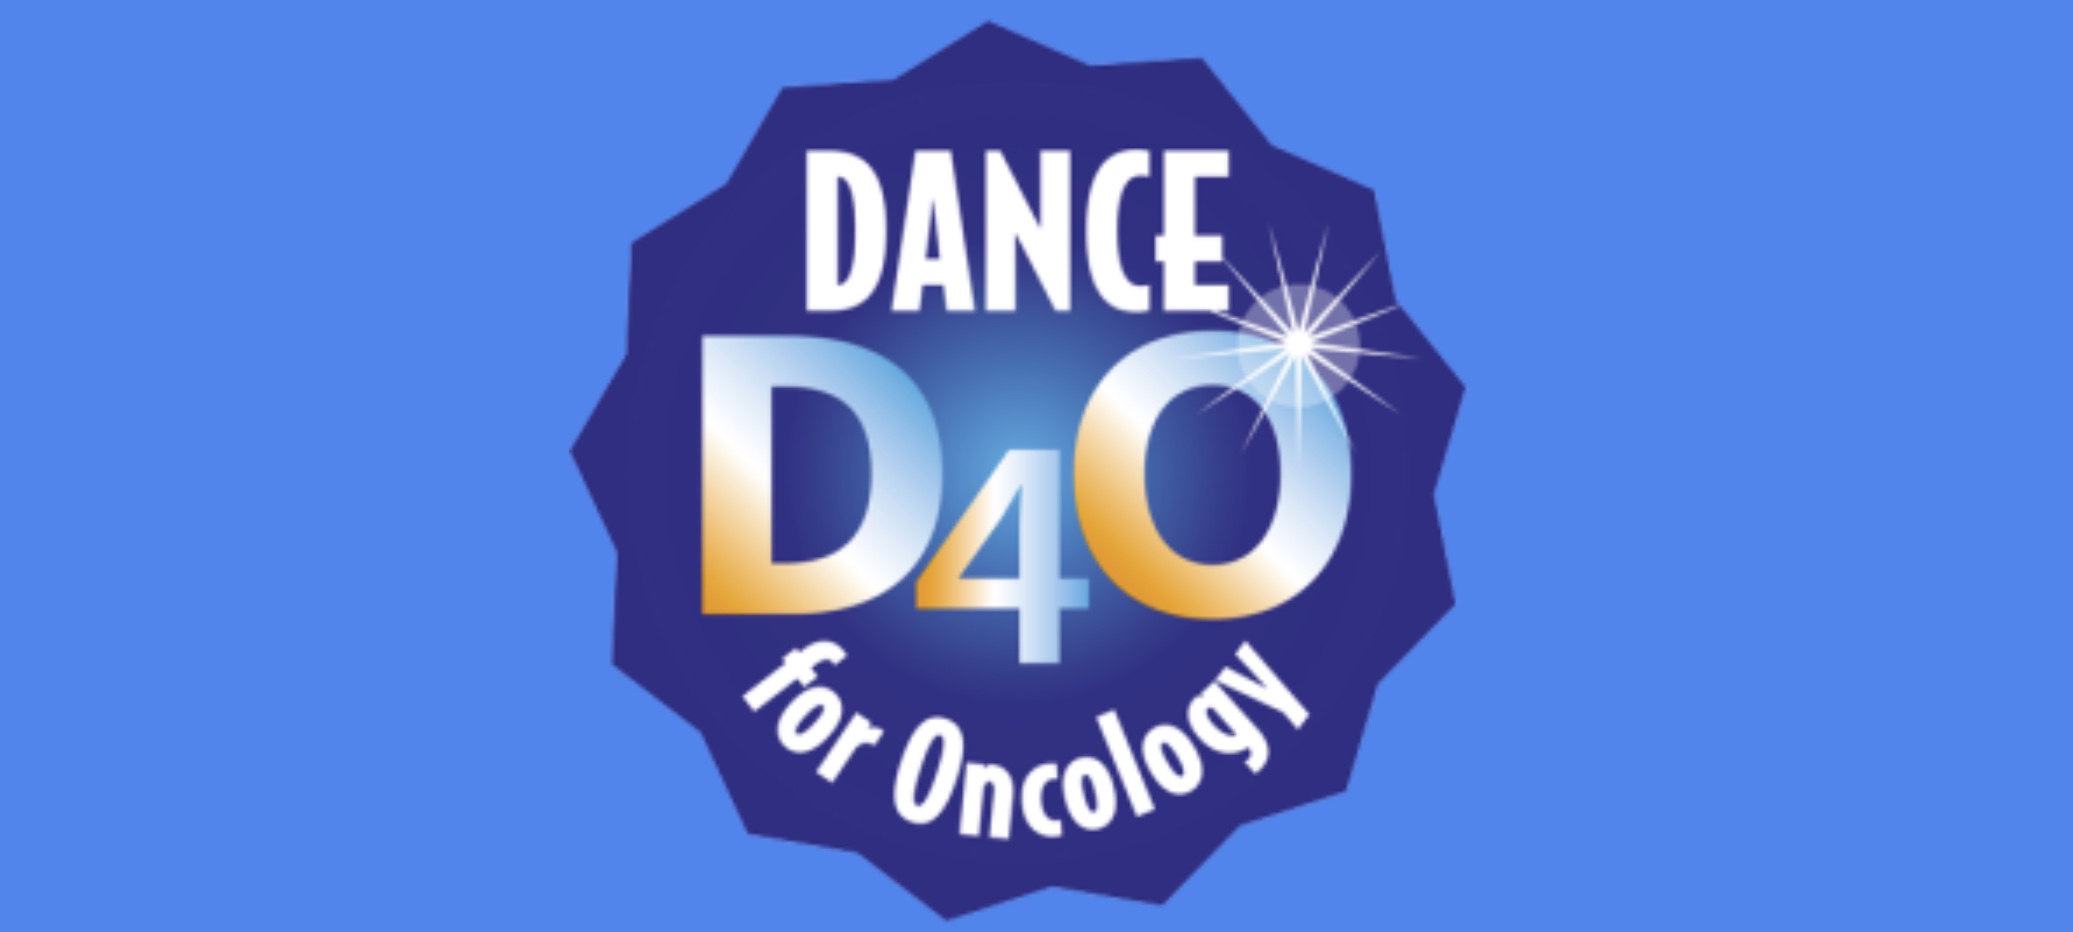 Gli ospedali di Legnago e Villafranca con Dance 4 Oncology: la danza per il benessere psicofisico dei pazienti oncologici